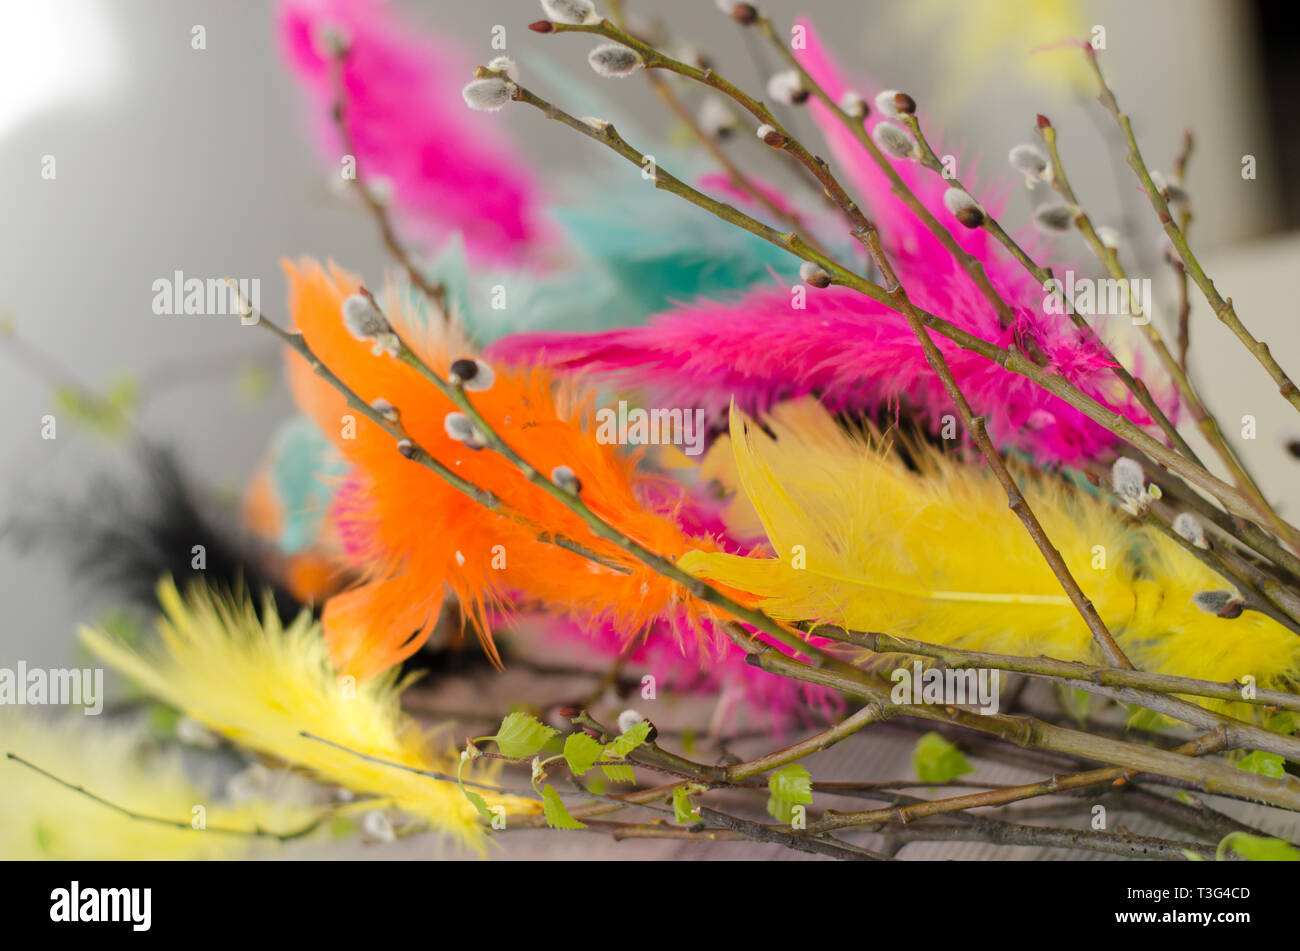 Pasqua tradizionale decorazione realizzata con ramoscelli con piume colorate su di essi Foto Stock